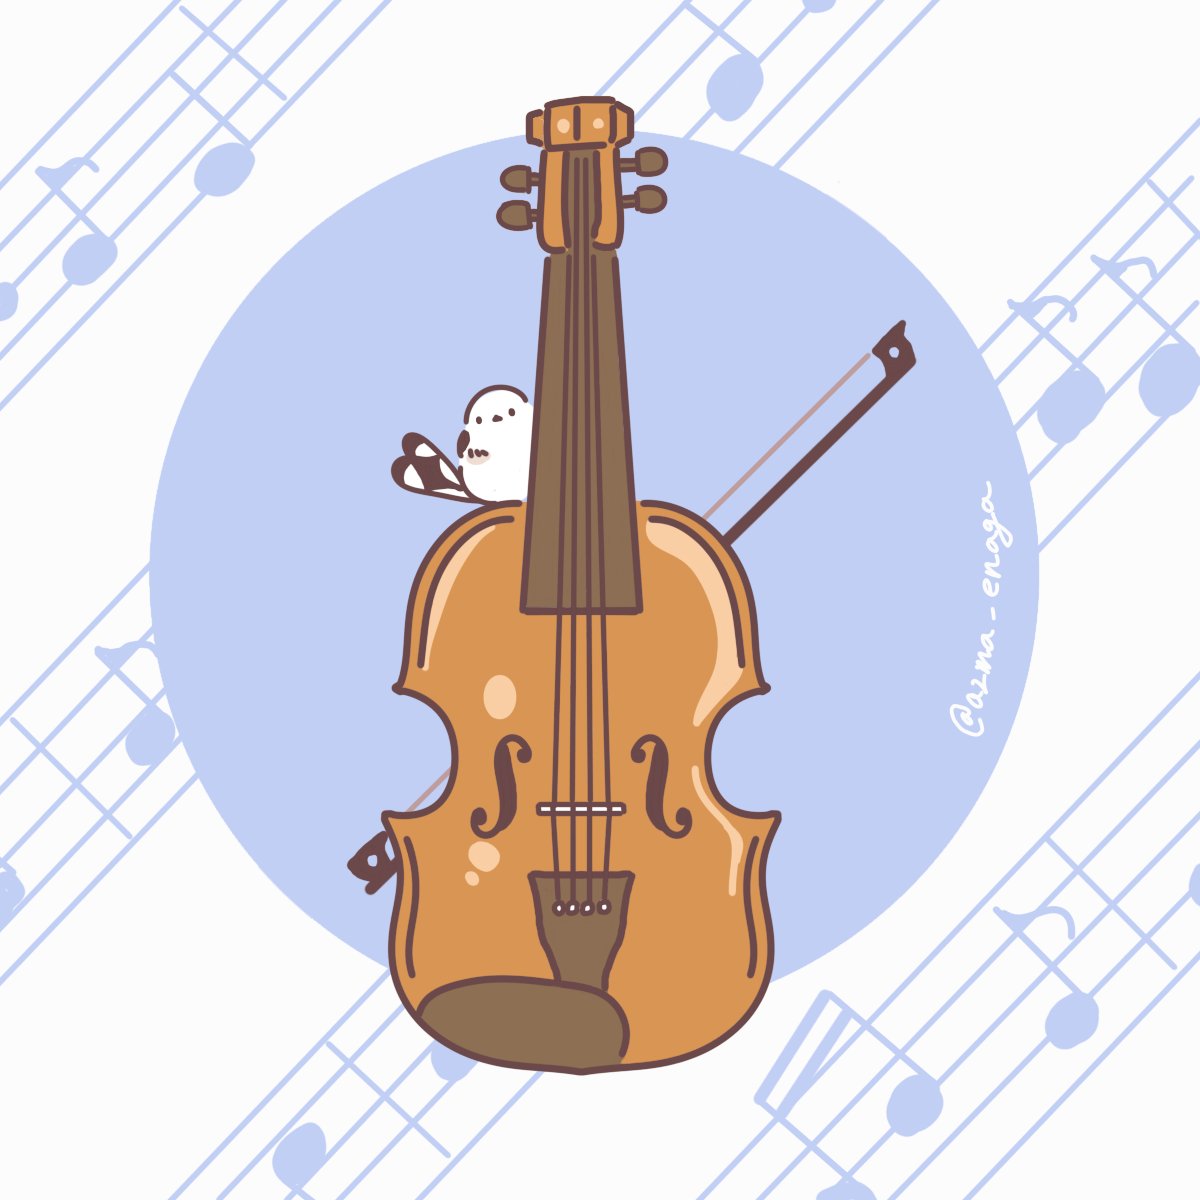 吾妻まいか デザフェスc 212 お題箱から楽器シリーズを バイオリン ユーフォニアム コントラバス ファゴット 他の楽器はまた次回に フリーアイコン T Co Glq6fuumpt Twitter